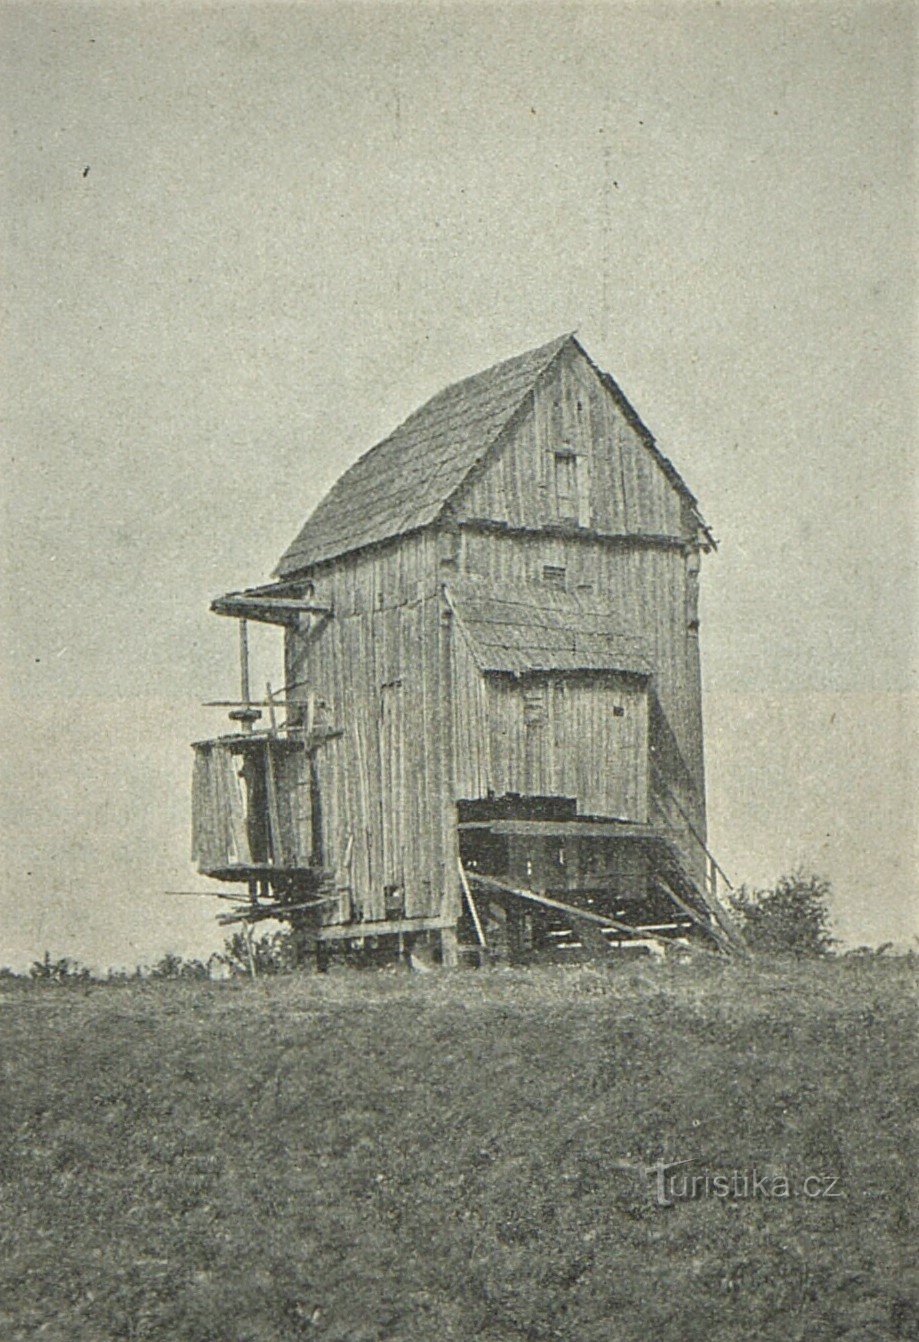 Fotografie cu moara de vânt Doblnice din 1909